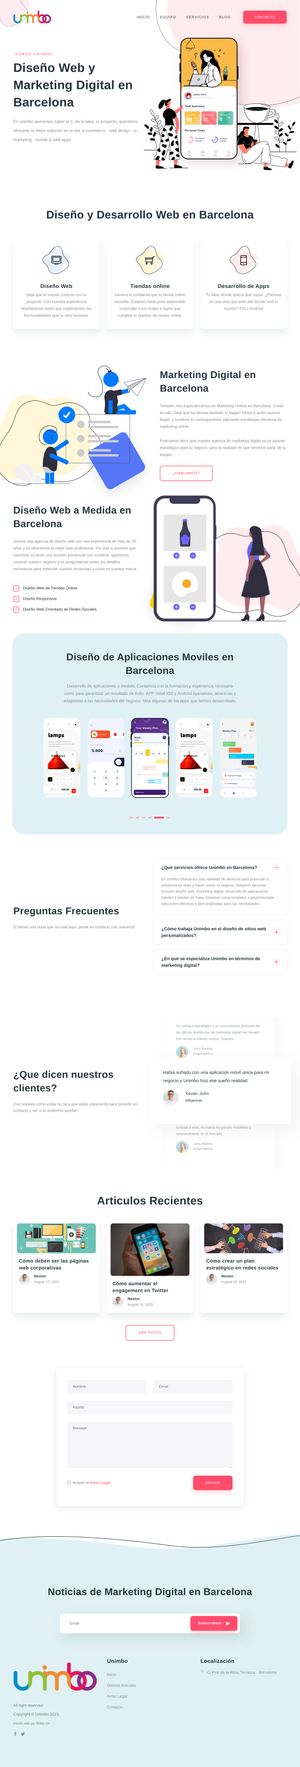 Ejemplo de diseño web completo en Sant Pere de Ribes: Muestra la página web profesional que ha diseñado Ridaly para unimbo